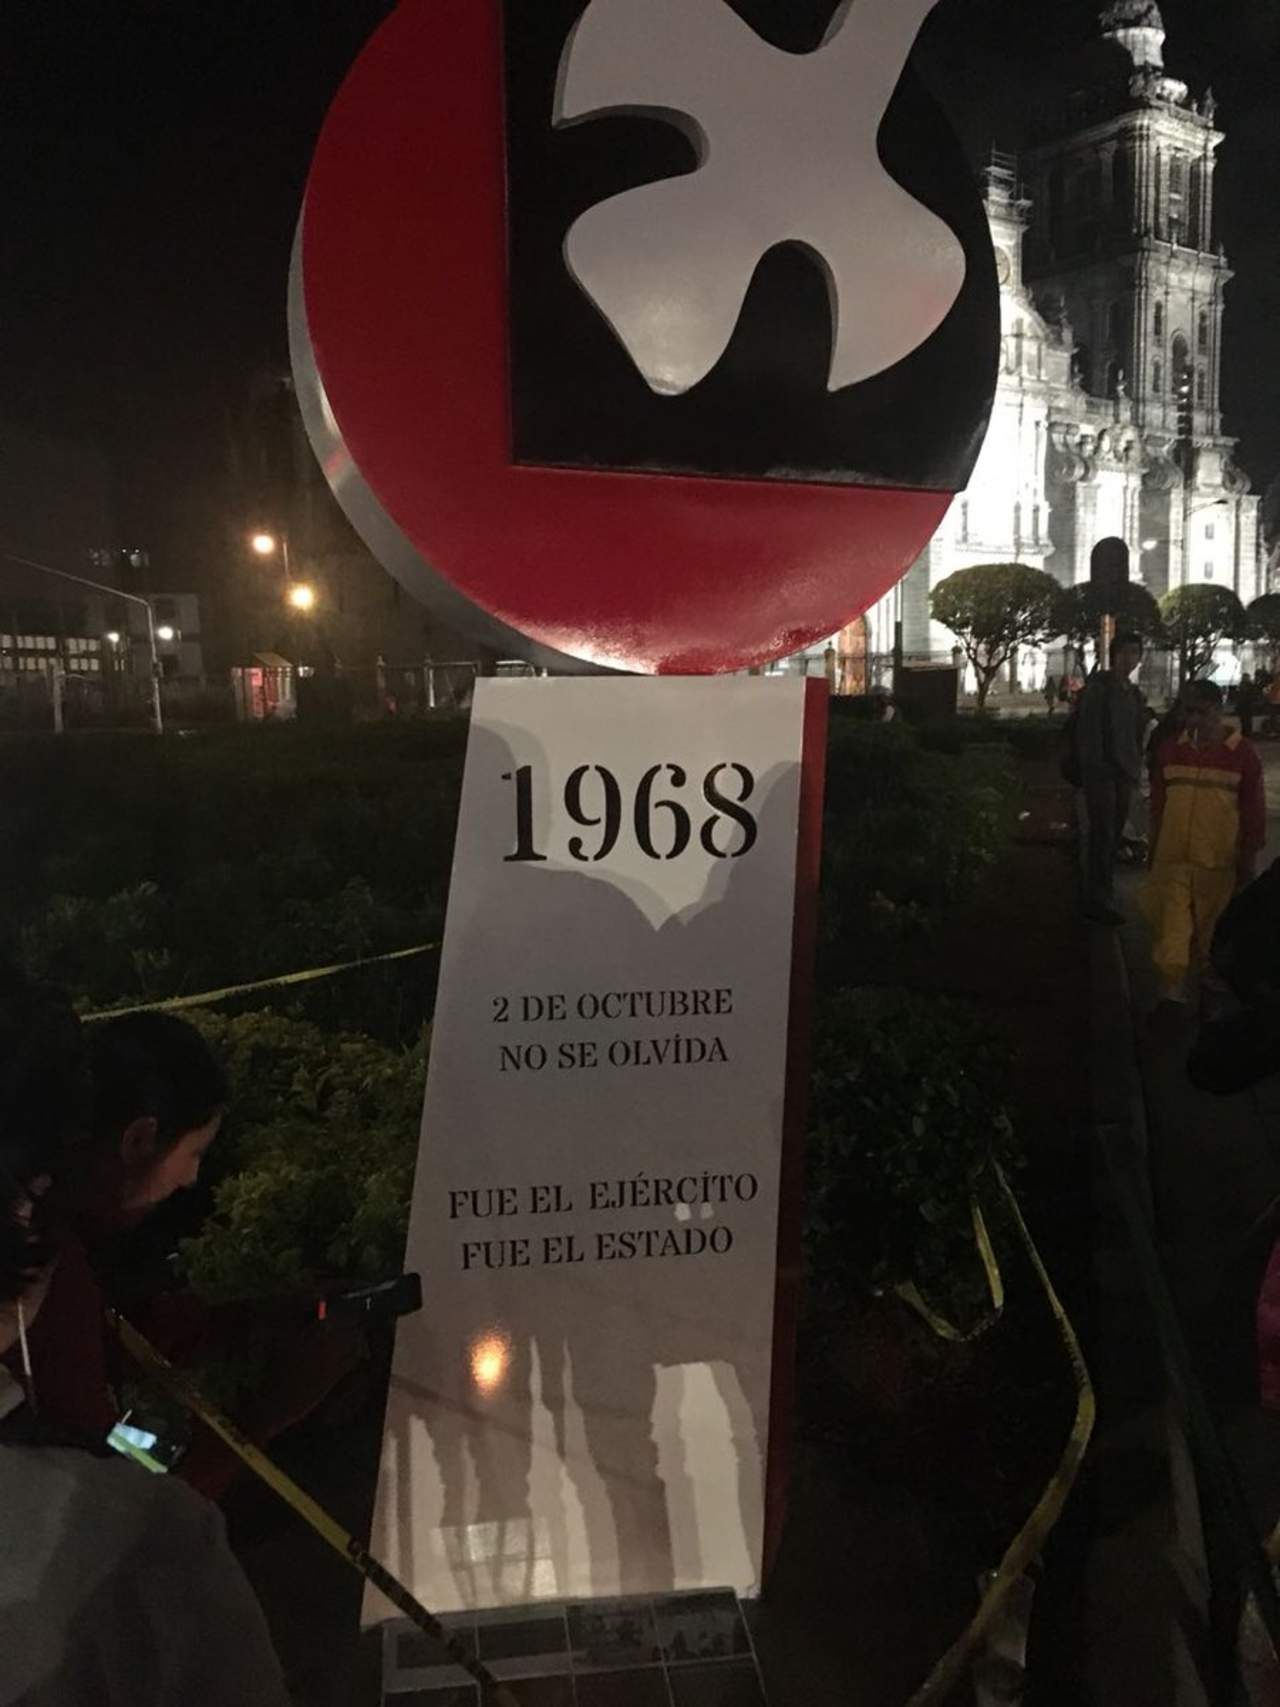 En una jardinera ubicada en la esquina de Madero y el Zócalo, activistas colocaron el antimonumento con el logo del Consejo Nacional de Huelga del 68 y con las frases '1968' '2 de octubre no se olvida' y 'Fue el Ejército, fue el Estado'. (ESPECIAL)